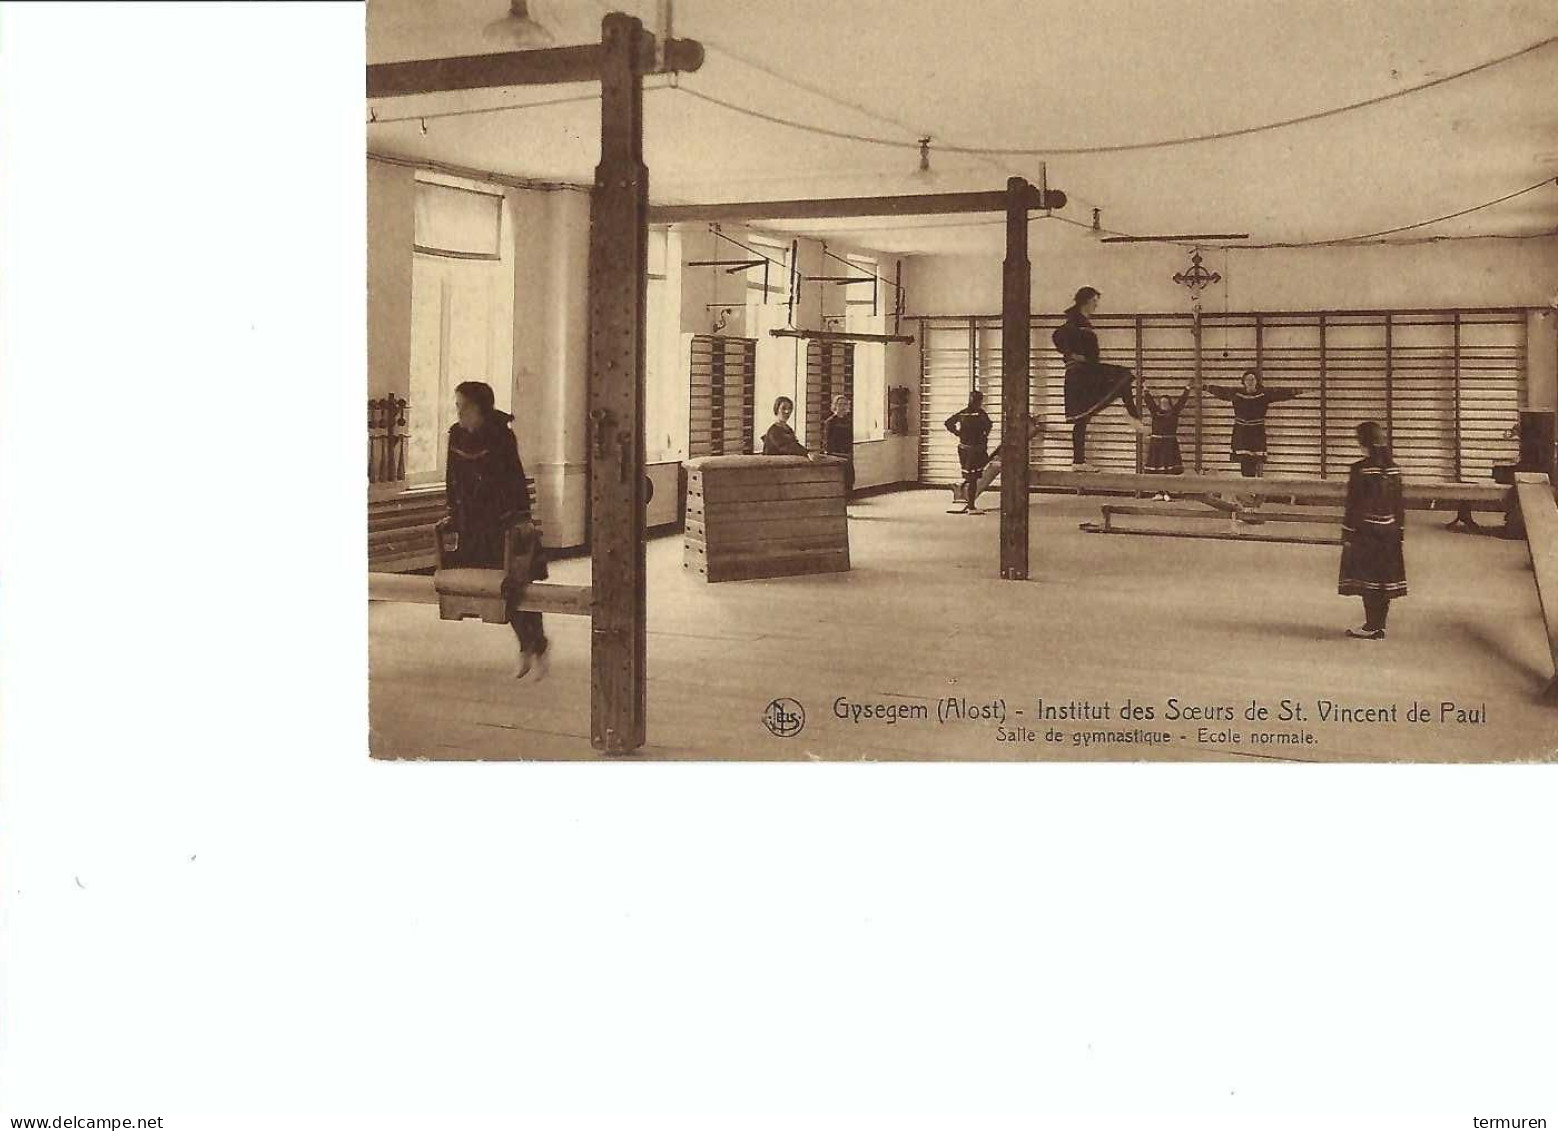 Gijzegem:Institut Des Soeurs De St Vincent De Paul Gysegem -Salle De Gymnastique - école Normale - Aalst